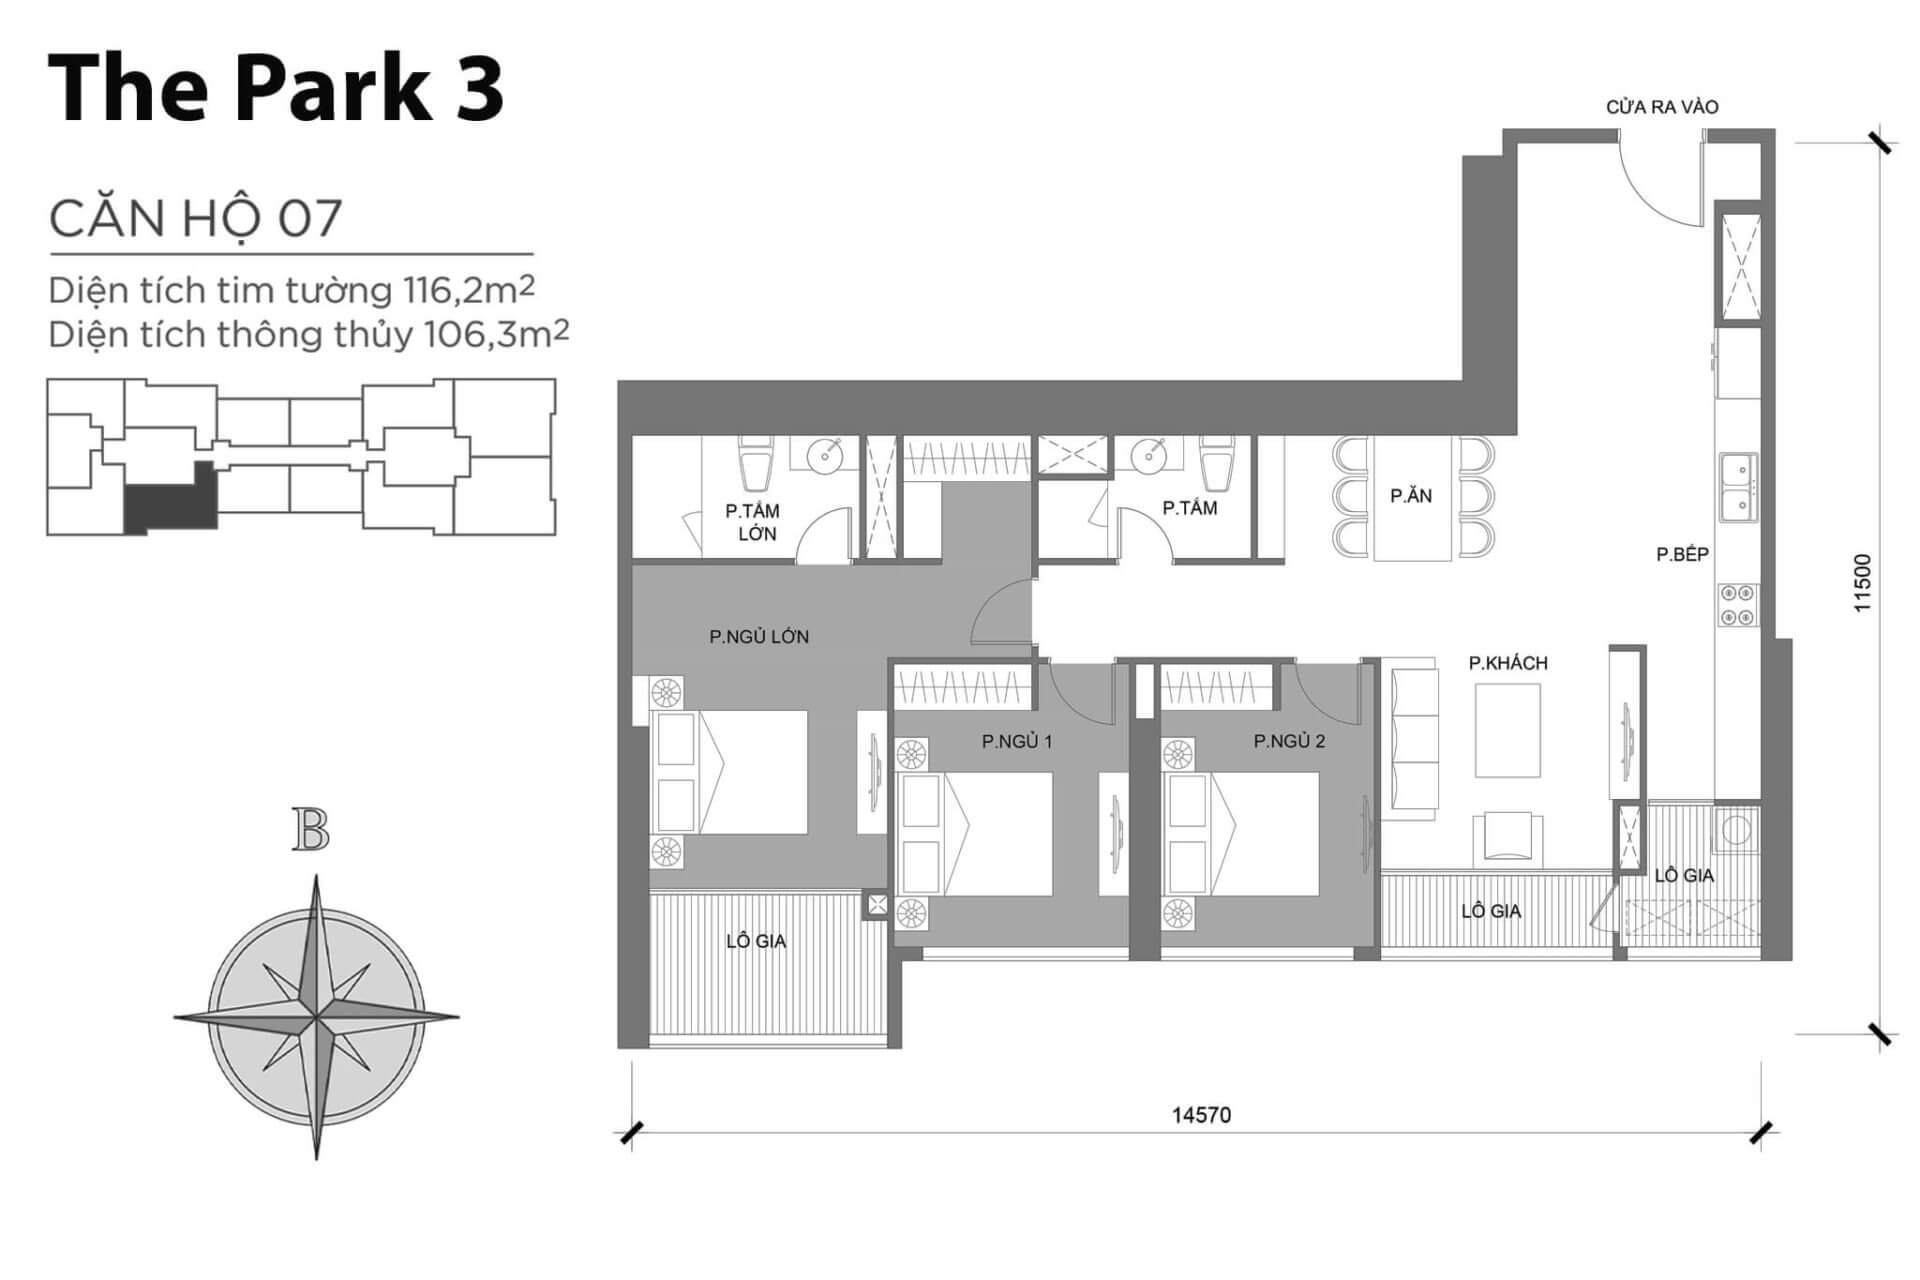 mặt bằng layout căn hộ số 07 Park 3 Vinhomes Central Park